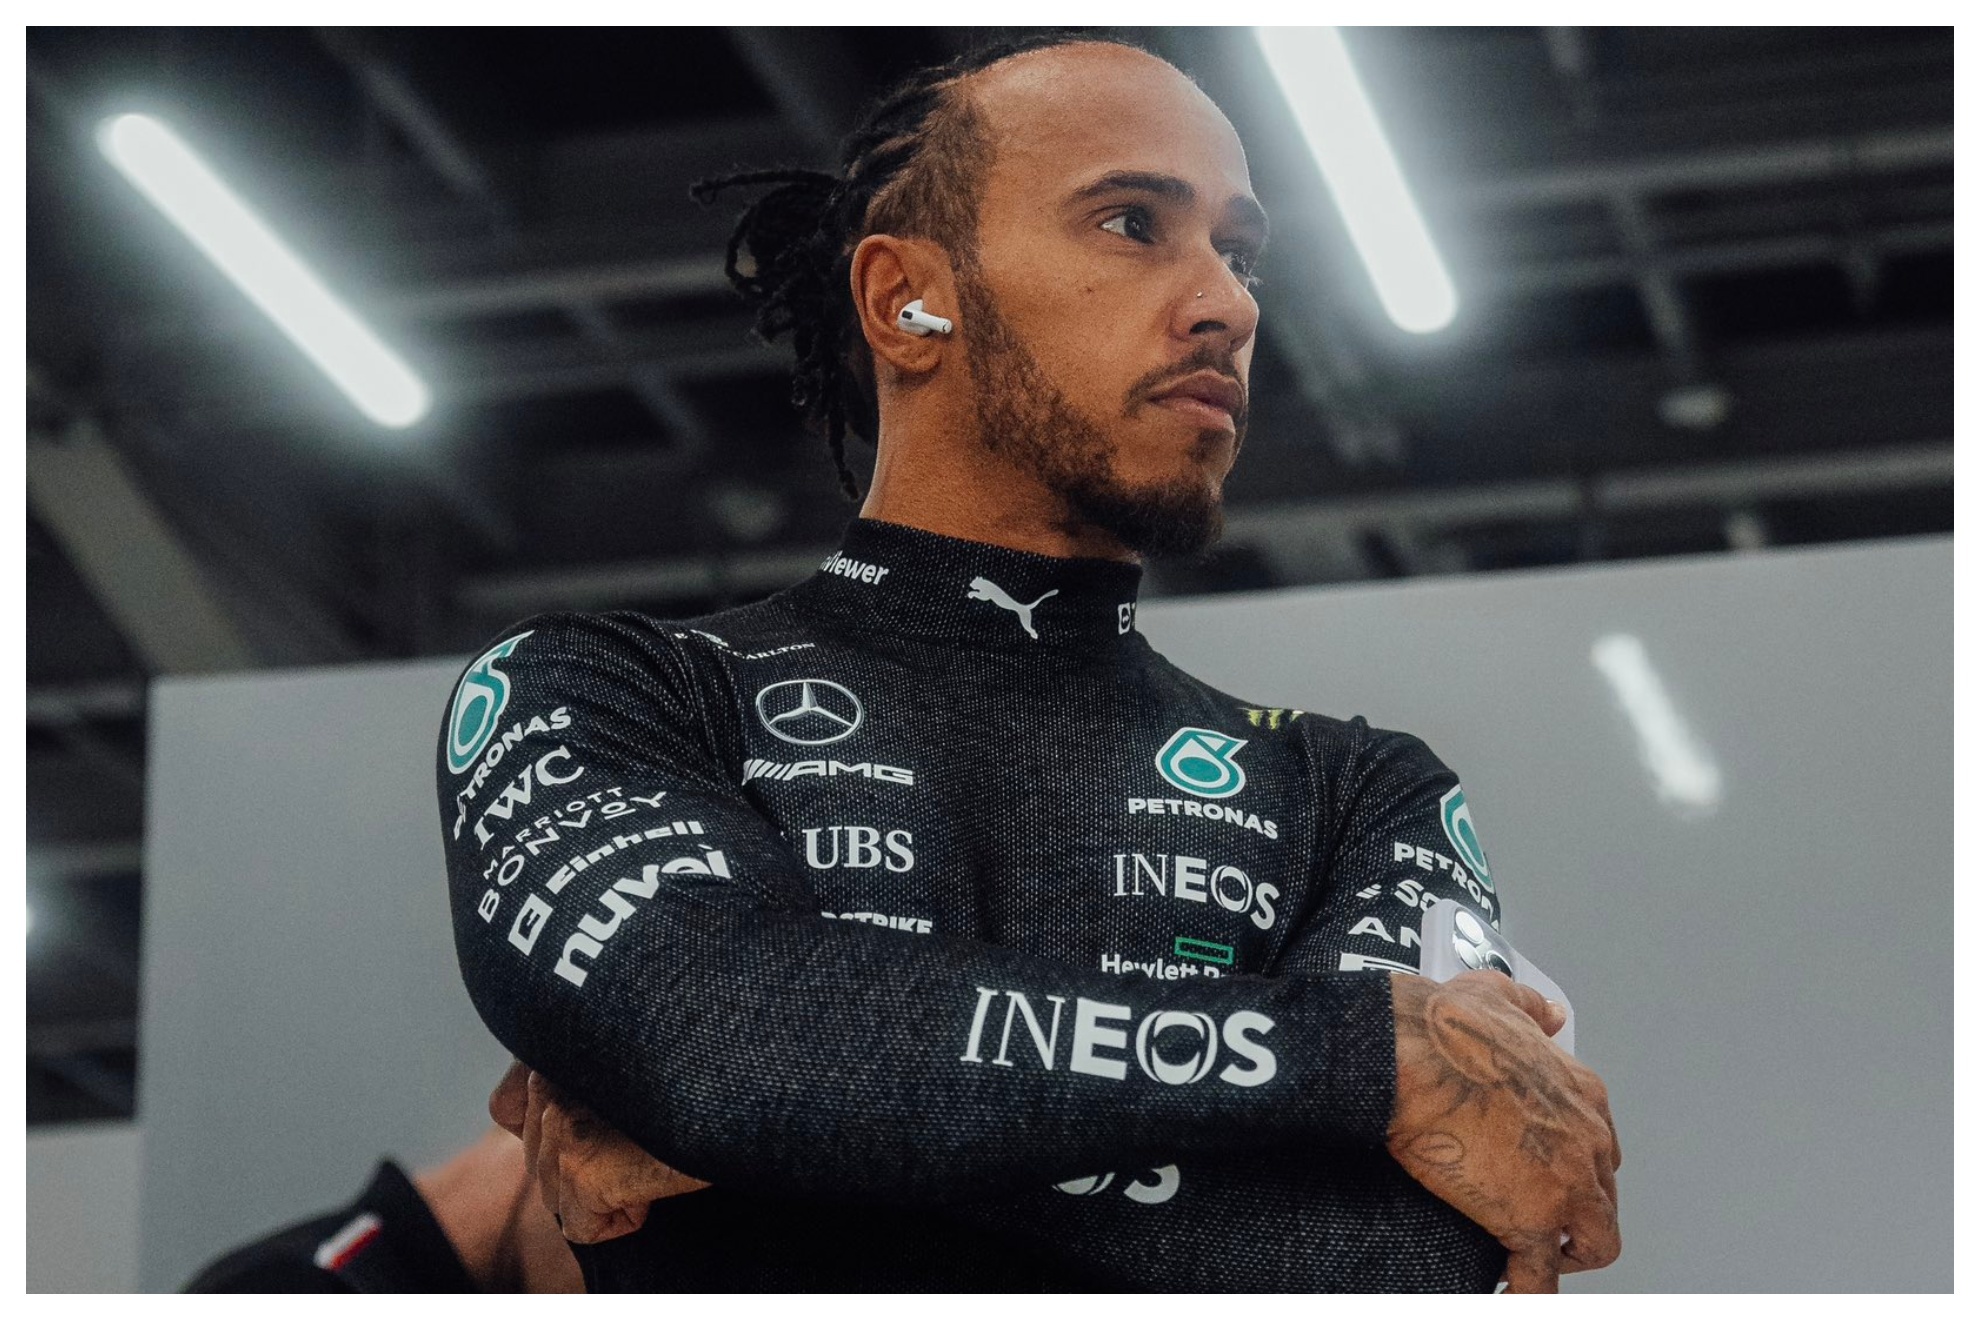 Lewis Hamilton News - Latest Lewis Hamilton News & Rumors